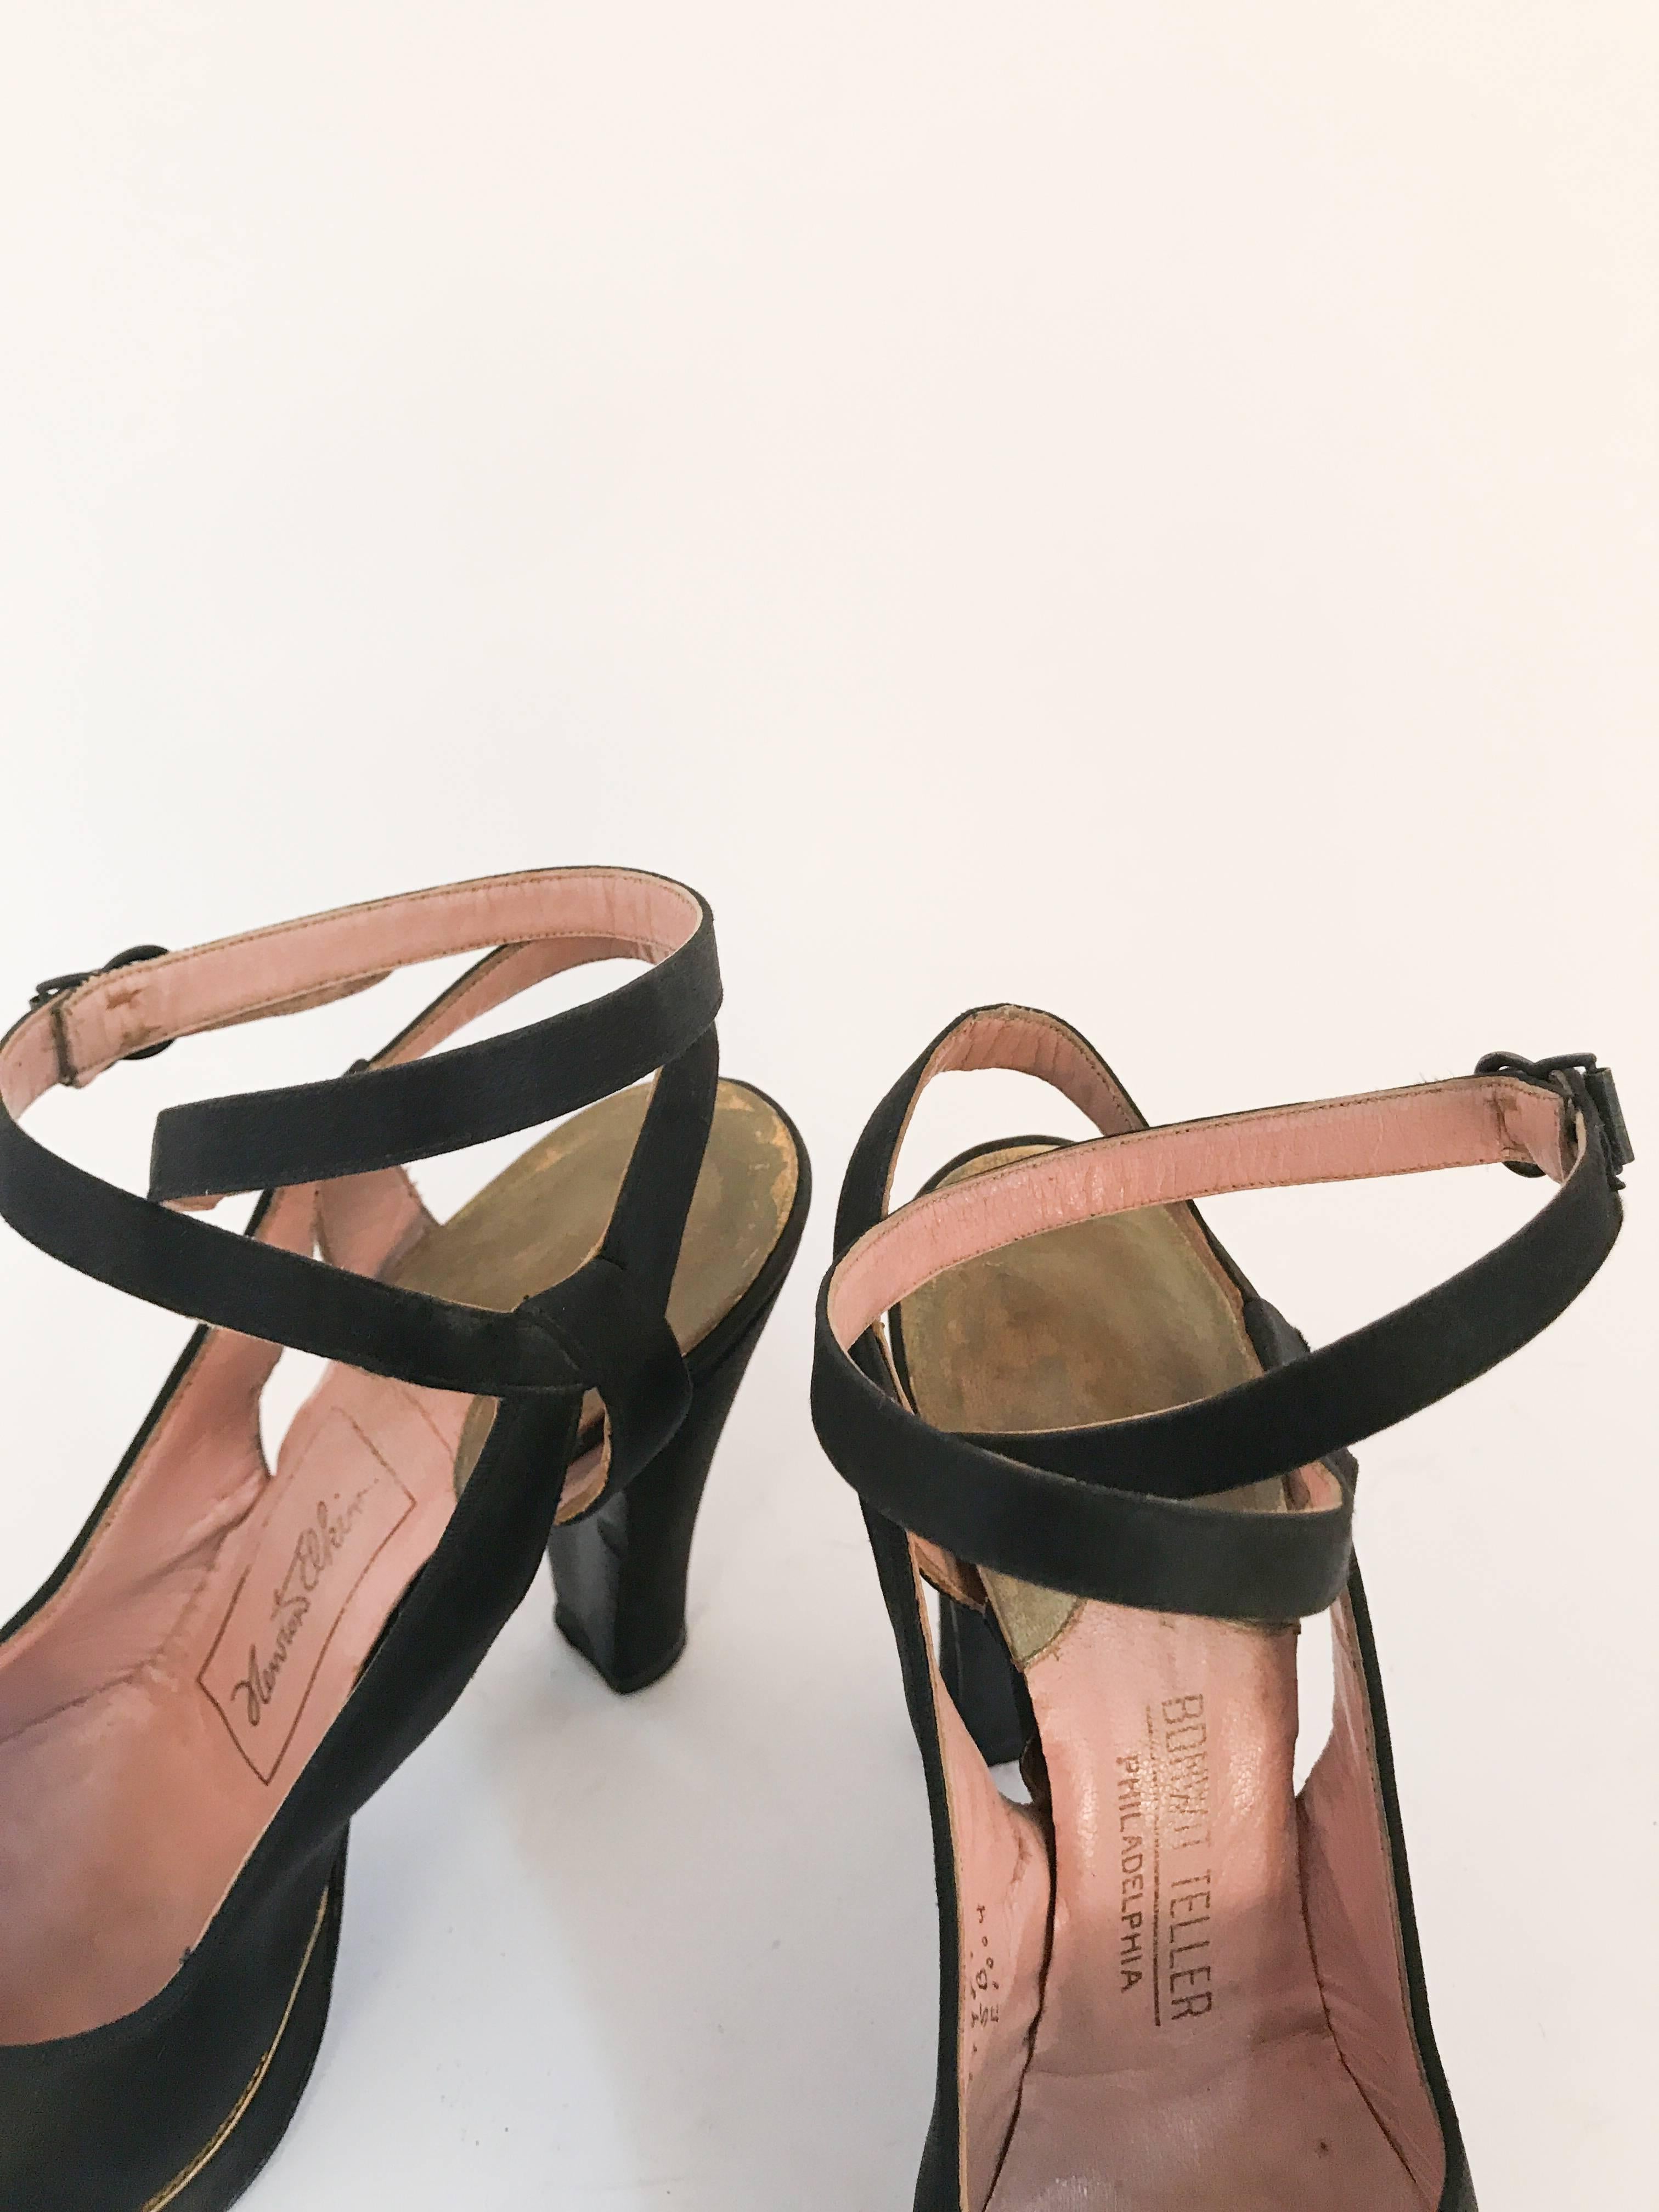 talons à lanières en satin noir et or des années 1940. Chaussures à talons en satin noir avec garniture en cuir doré et bride croisée à la cheville avec boucle sur le côté. 